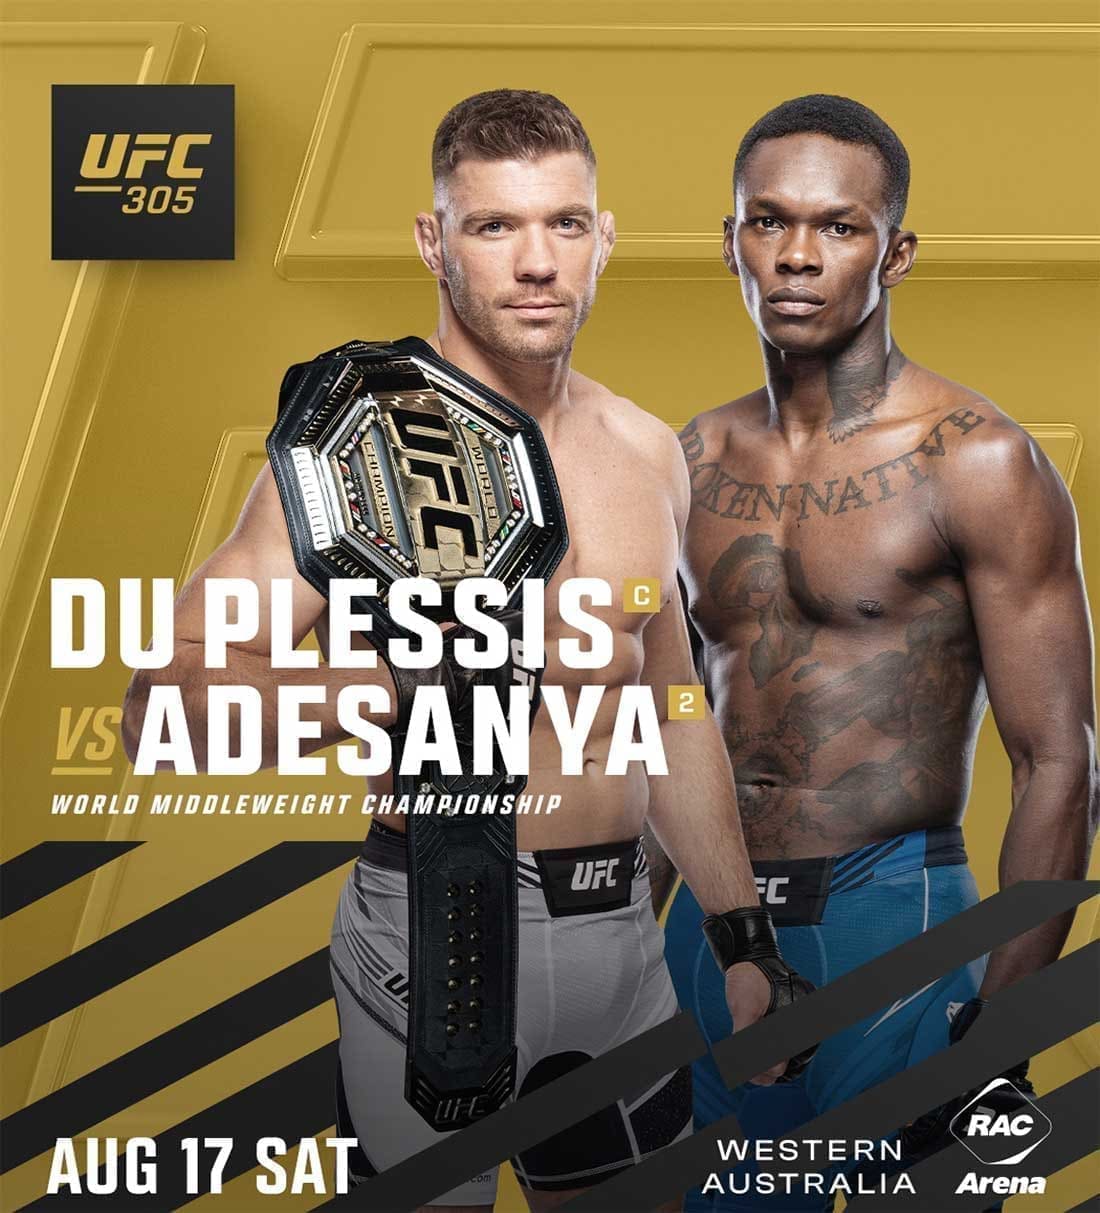 UFC 305: Дю Плесси - Адесанья дата проведения, кард, участники и результаты